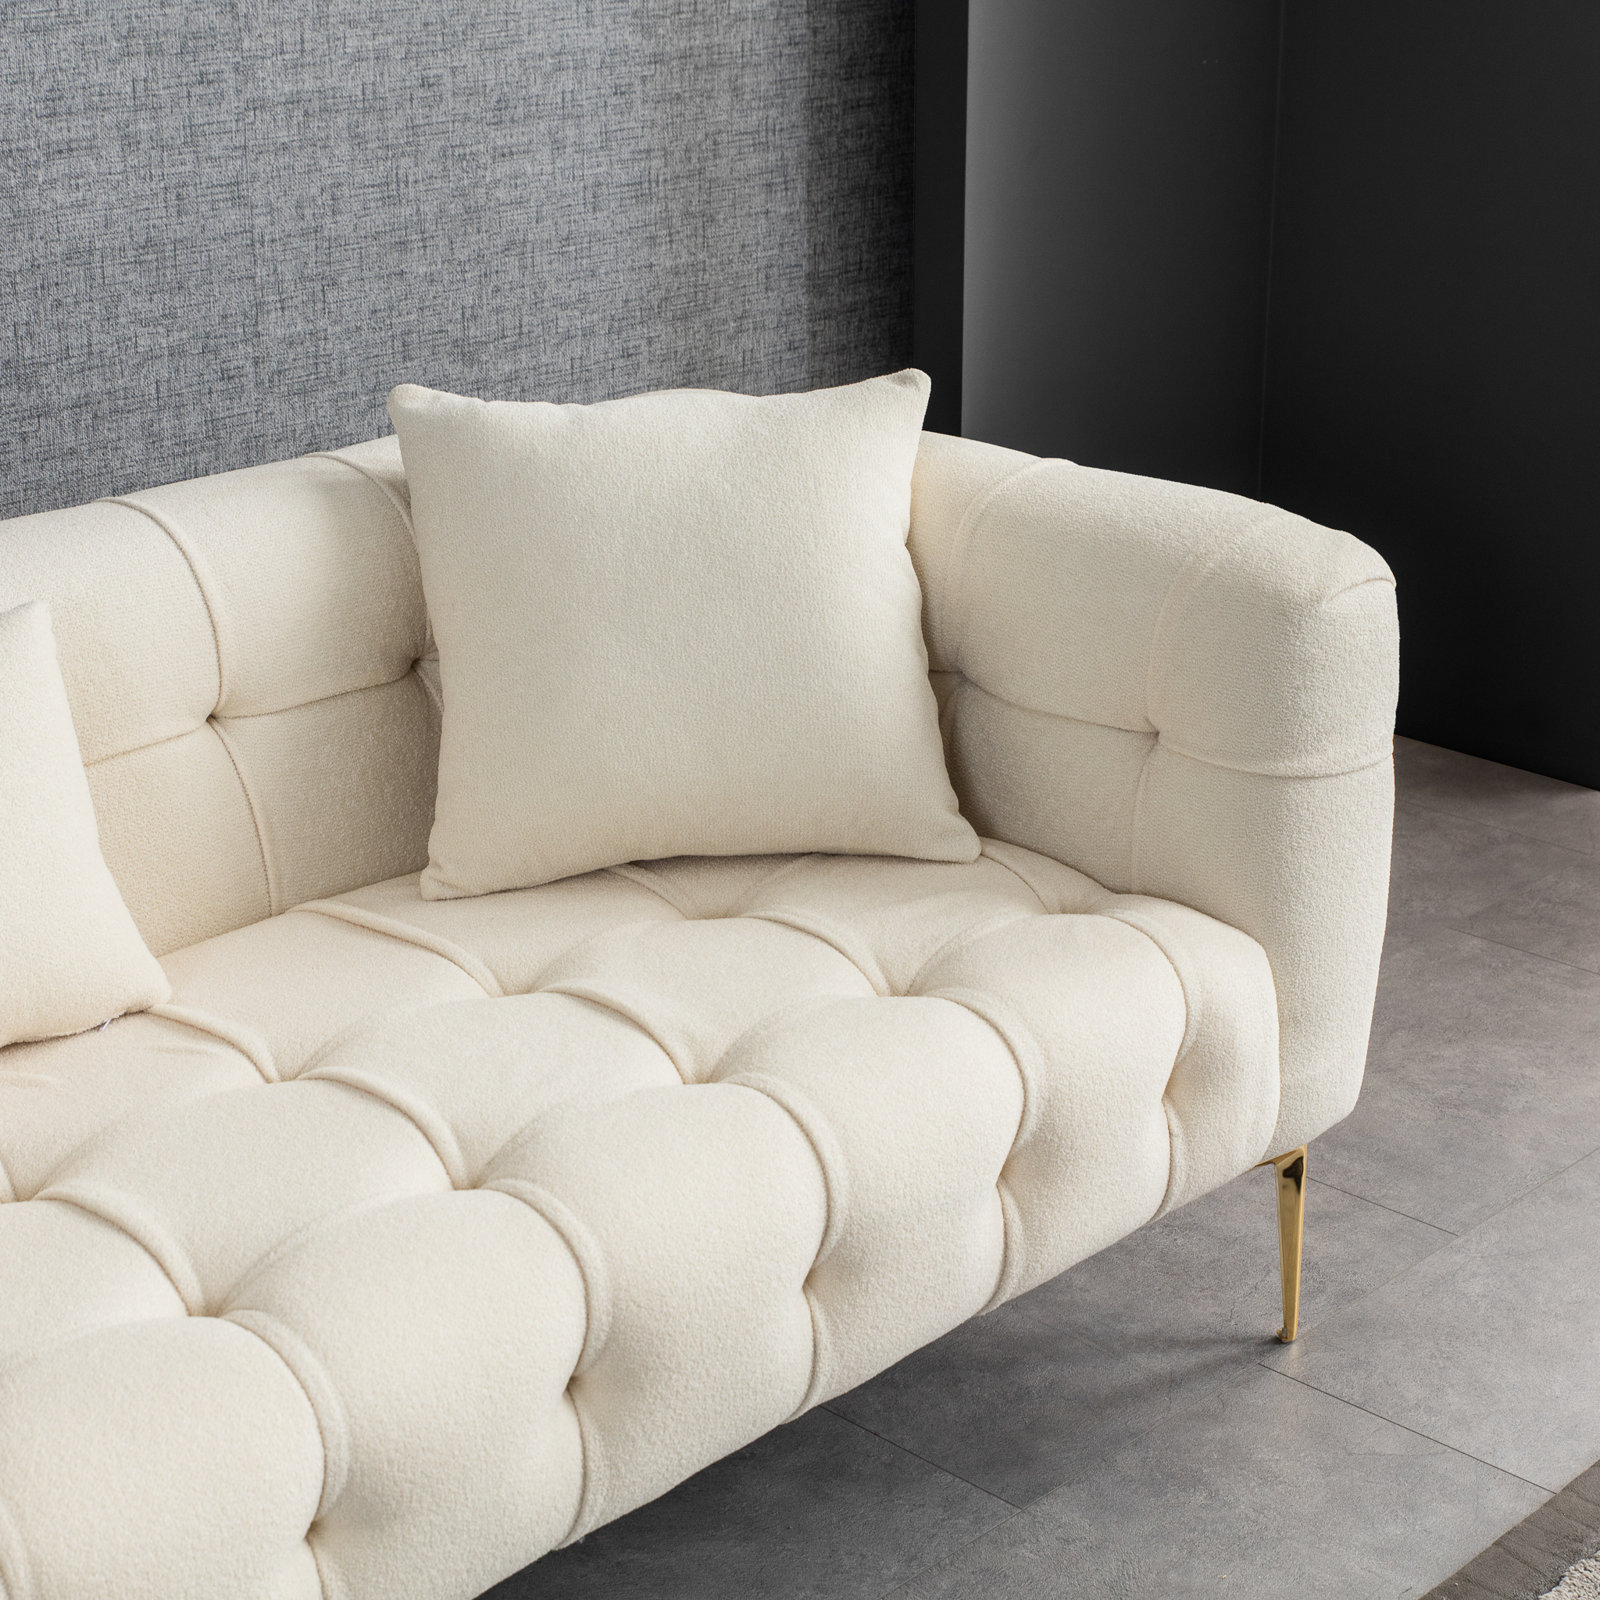 Everly Quinn Hilliker 91'' Upholstered Sofa